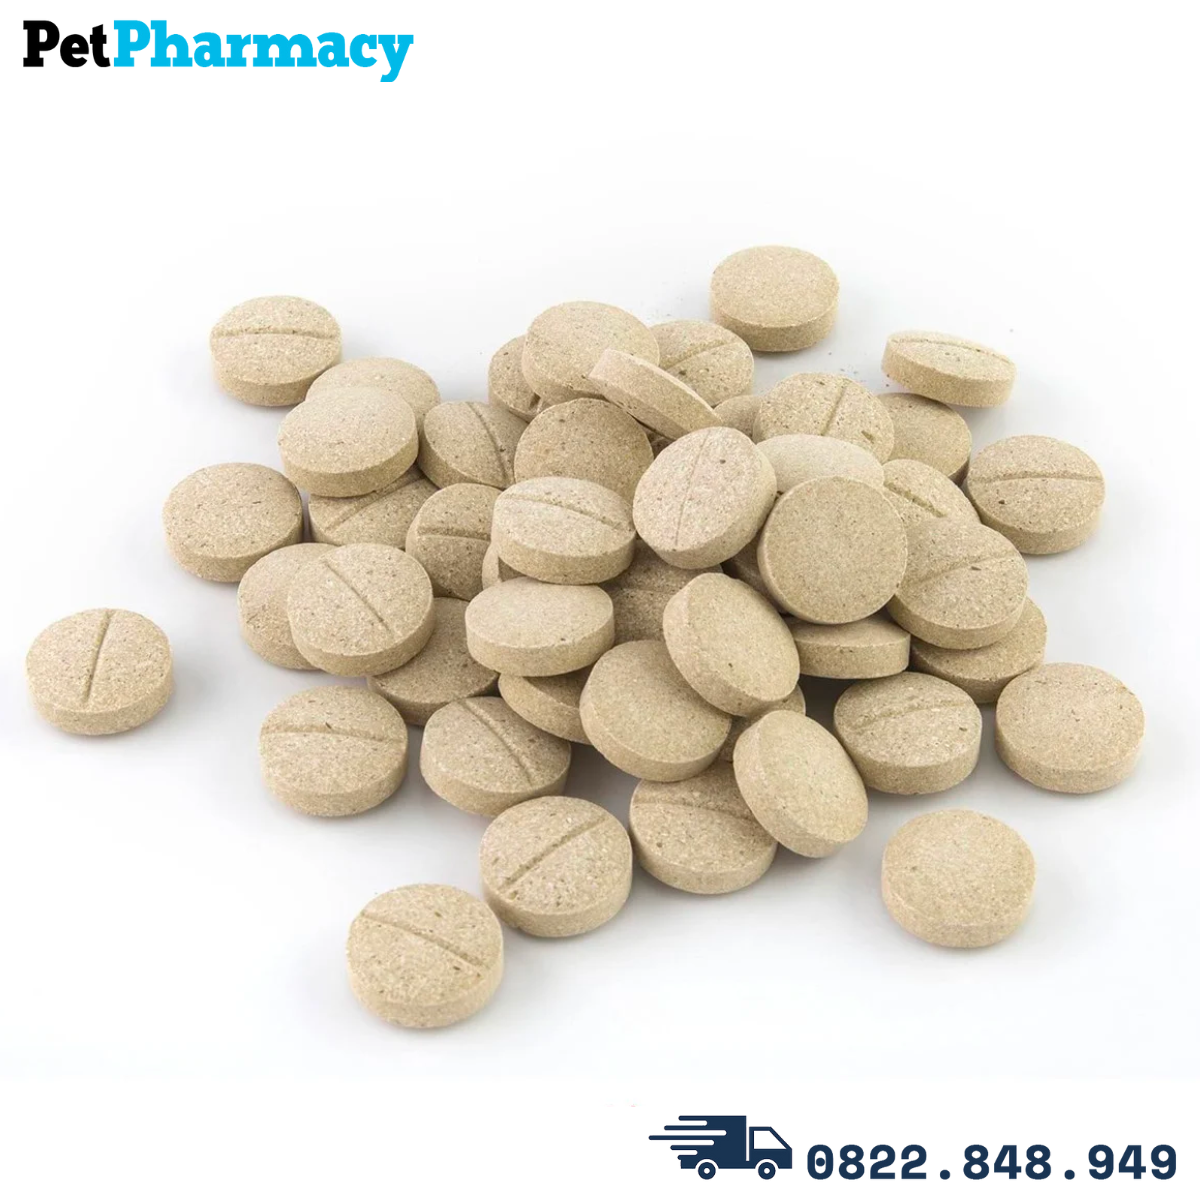  Viên uống Dr.CPC Trace Minerals Dietary Supplement for Cats & Dogs 90g - 180 viên - Bổ sung khoáng chất cho chó mèo 